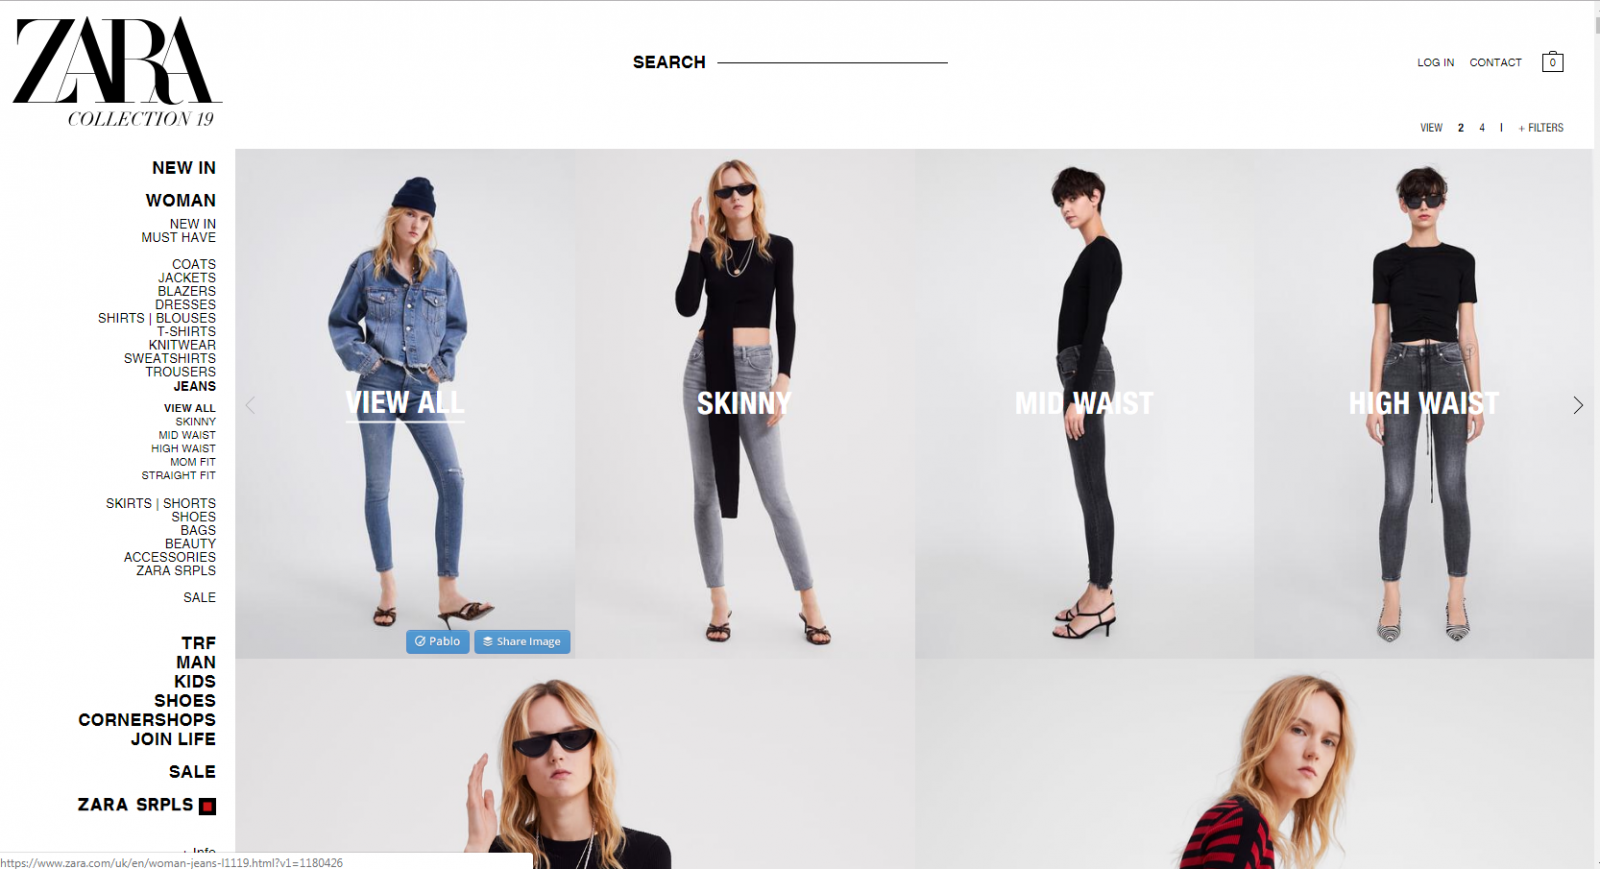 Одежда Zara Интернет Магазин Официальный Сайт